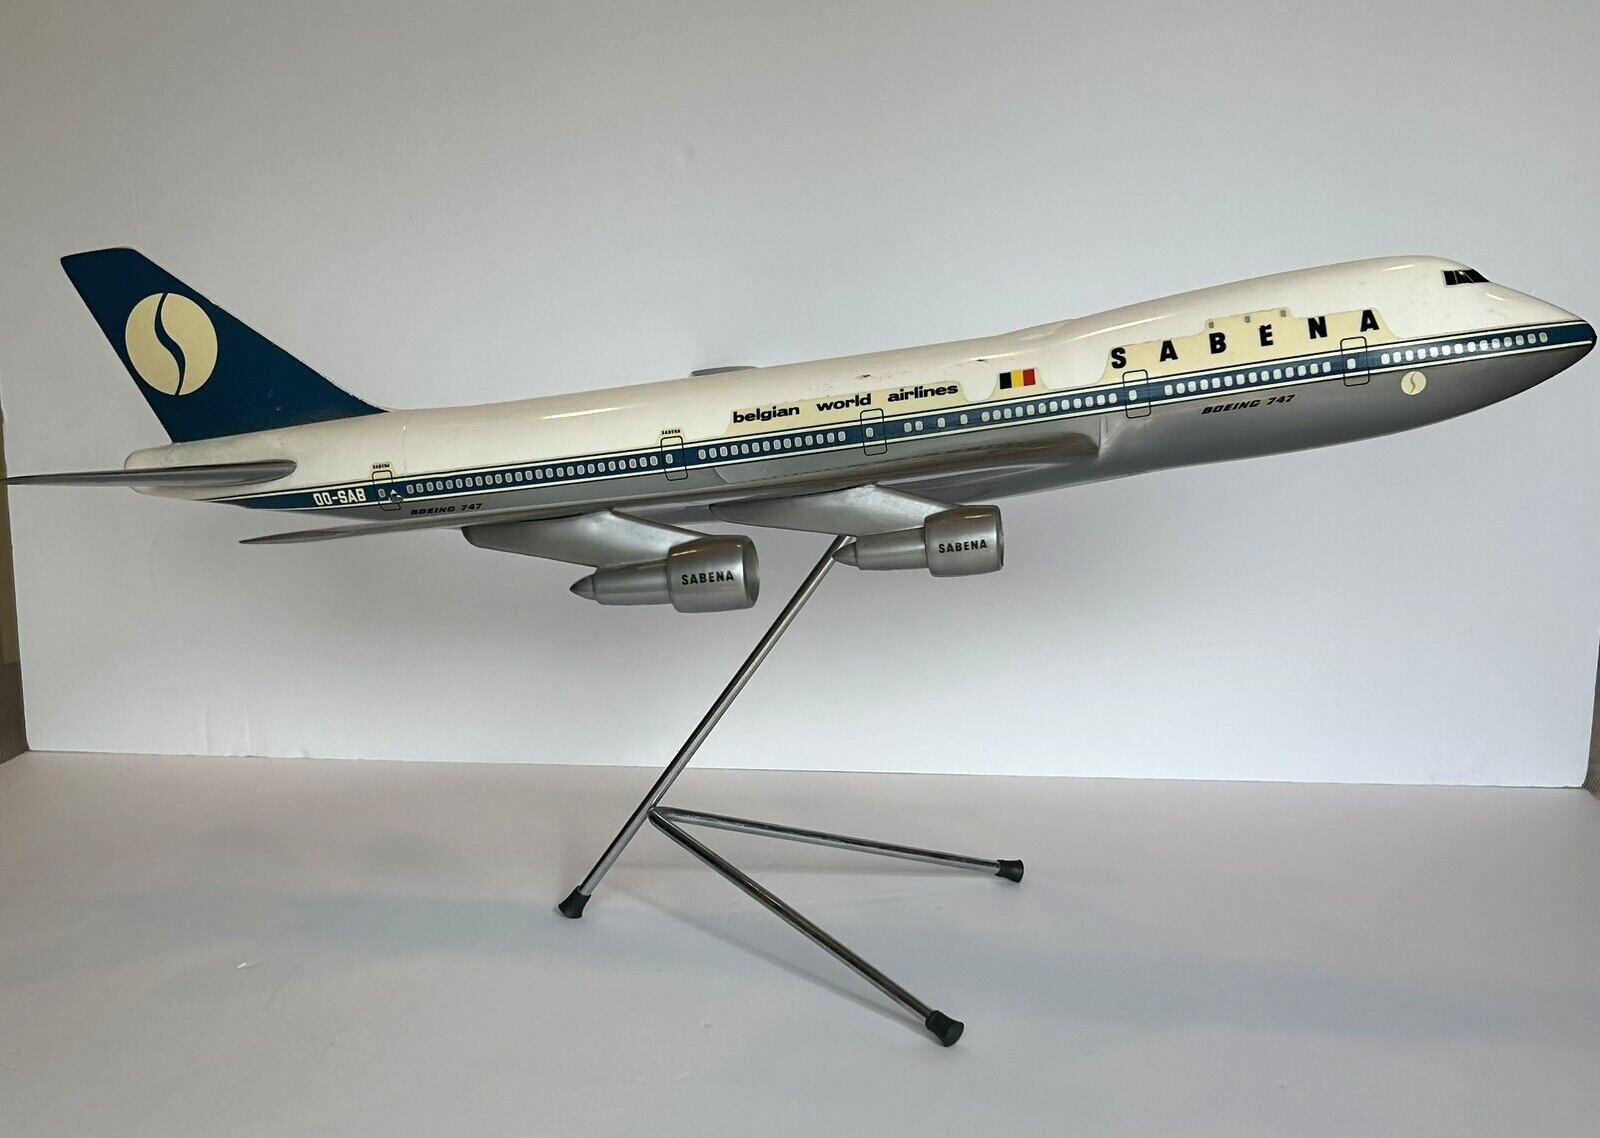 Vintage Sabena Boeing 747 Desk Model Airplane by AirPlast 1:100 Scale